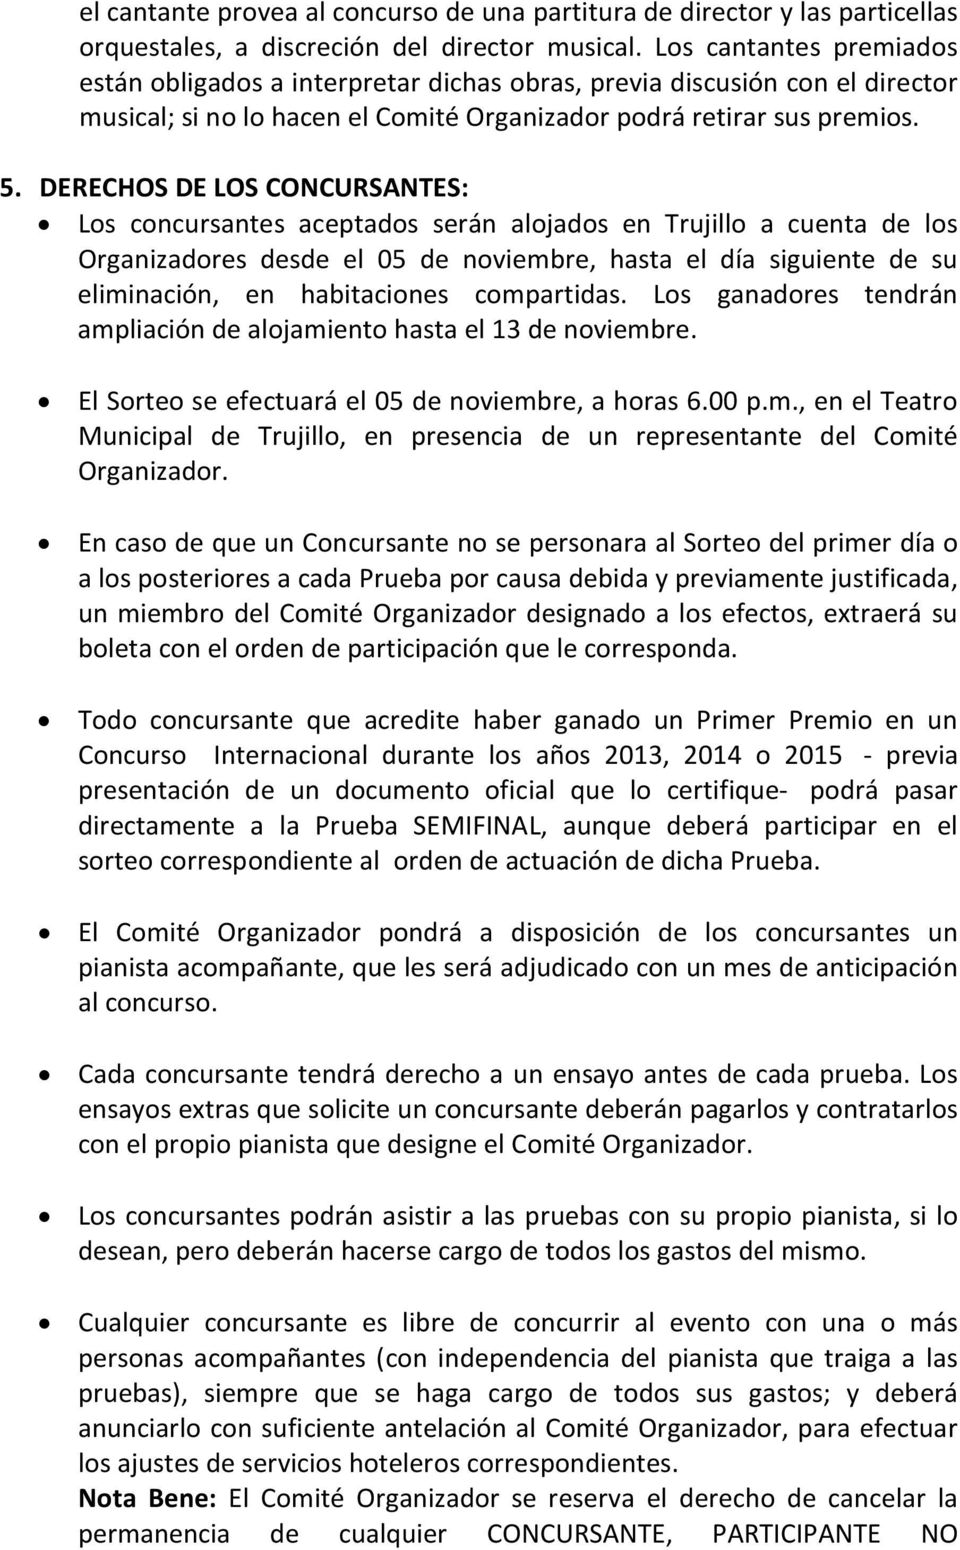 DERECHOS DE LOS CONCURSANTES: Los concursantes aceptados serán alojados en Trujillo a cuenta de los Organizadores desde el 05 de noviembre, hasta el día siguiente de su eliminación, en habitaciones